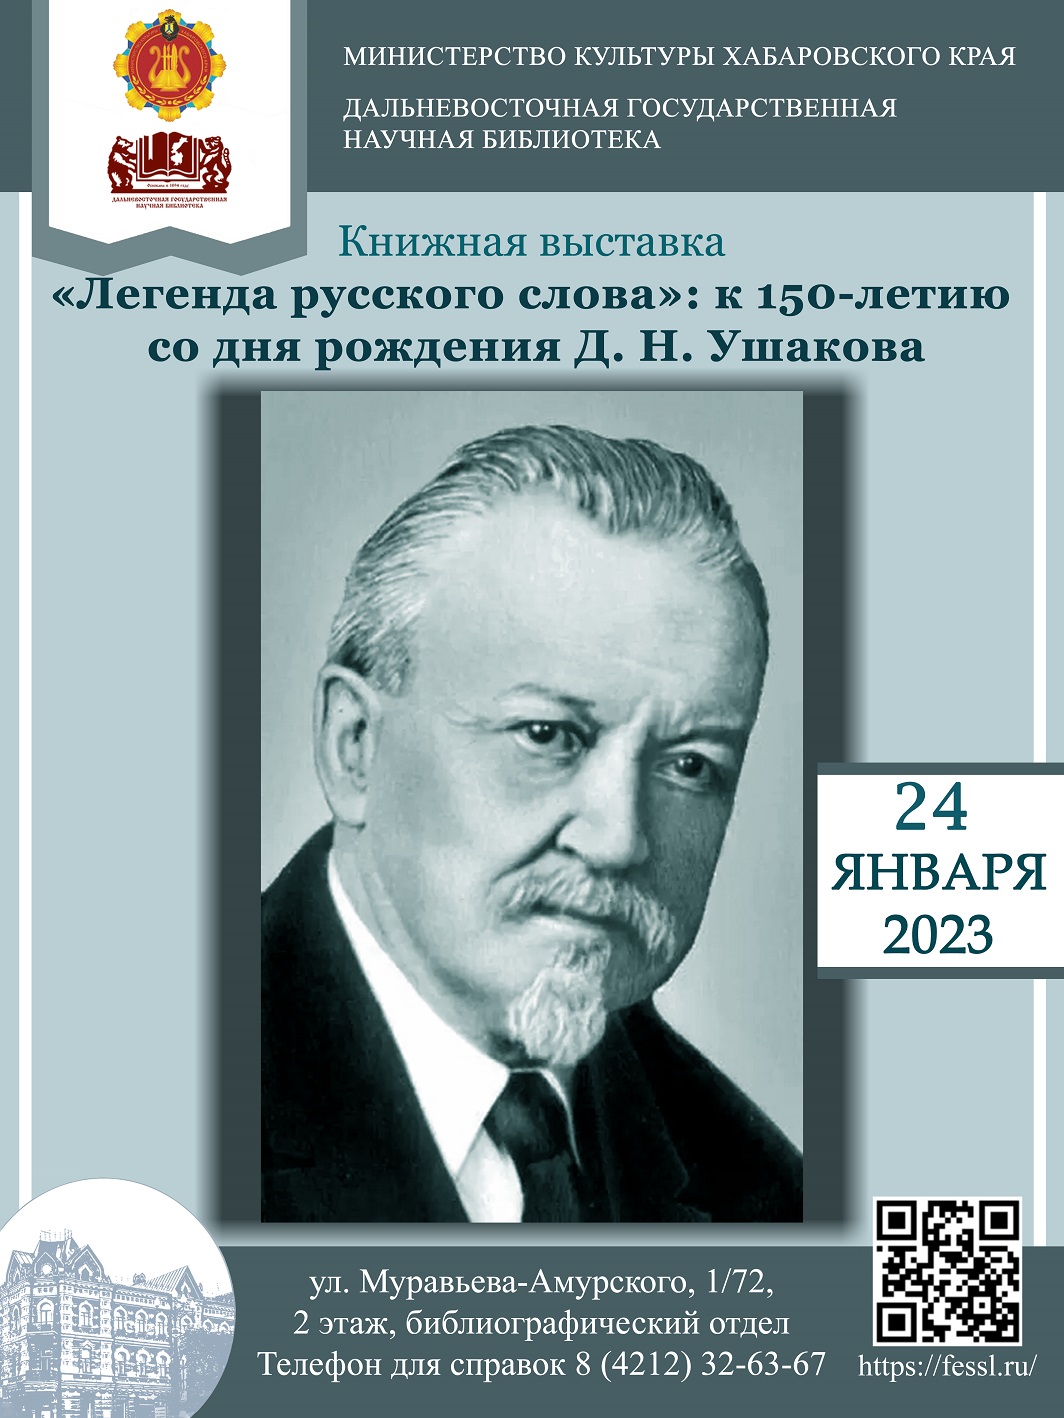 В Дальневосточной государственной научной библиотеке открылась книжная выставка, посвящённая 150-летию со дня рождения Дмитрия Николаевича Ушакова